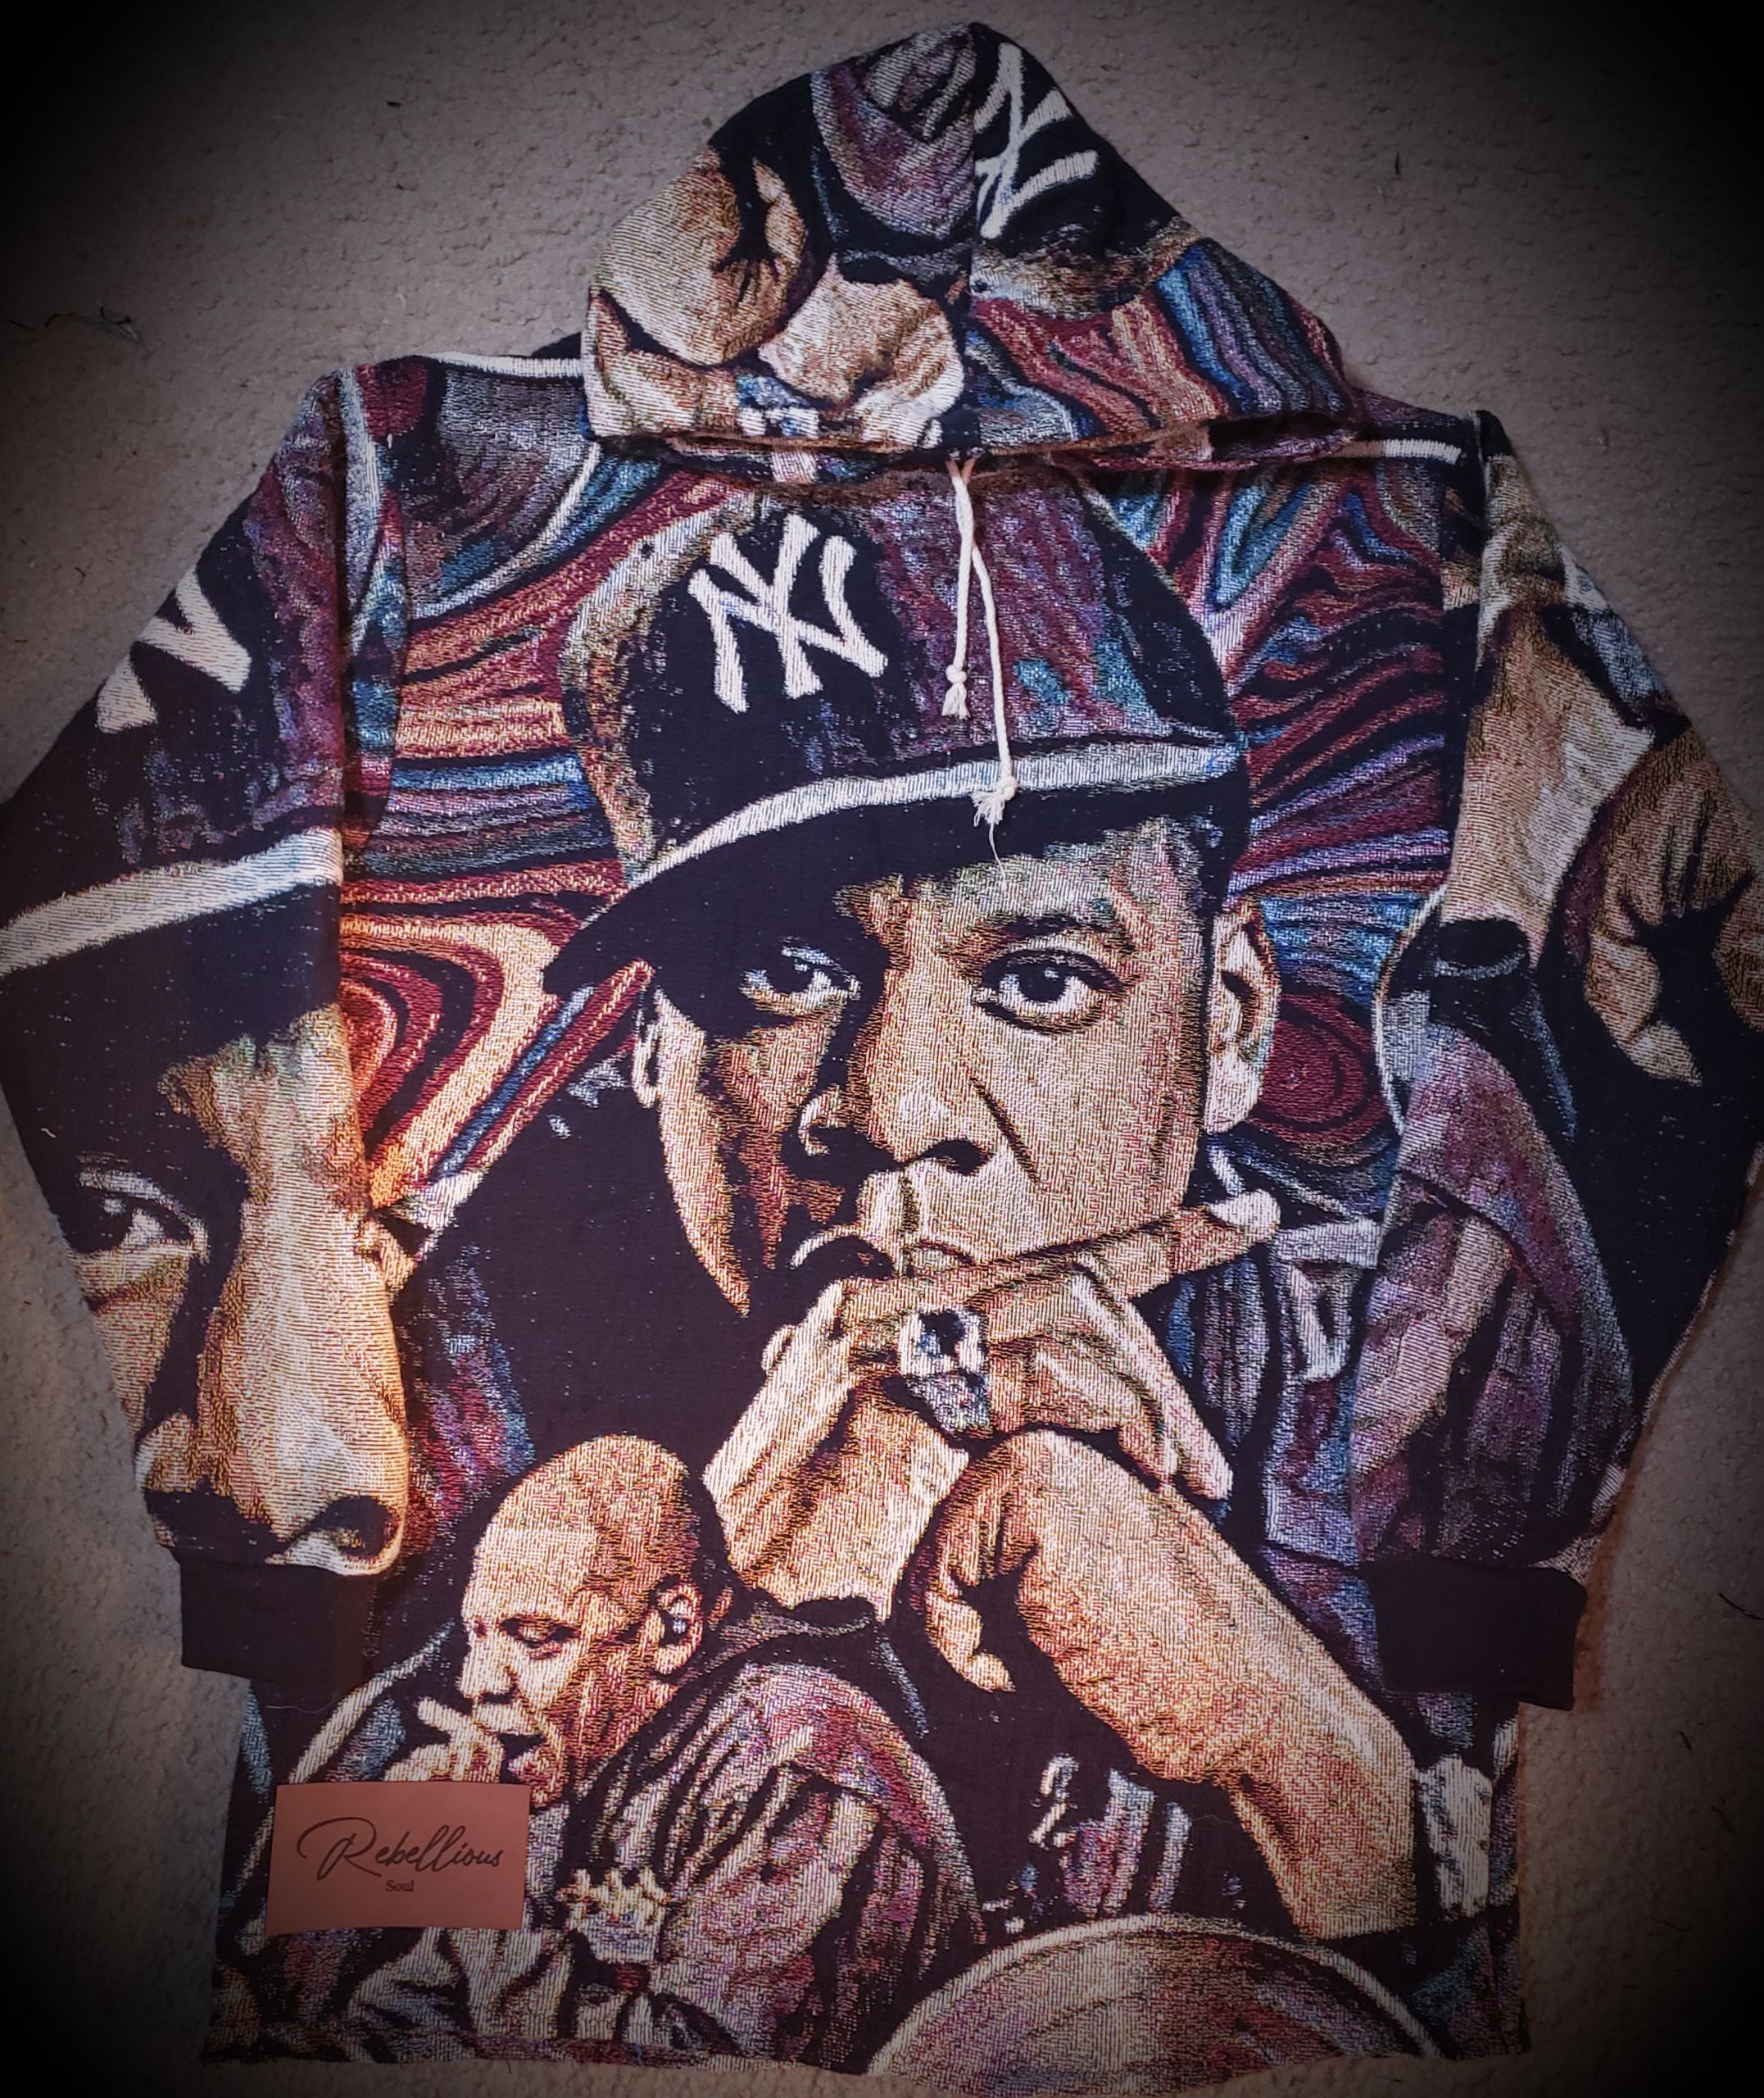 art of rapper jay-z wearing a new york knicks hat